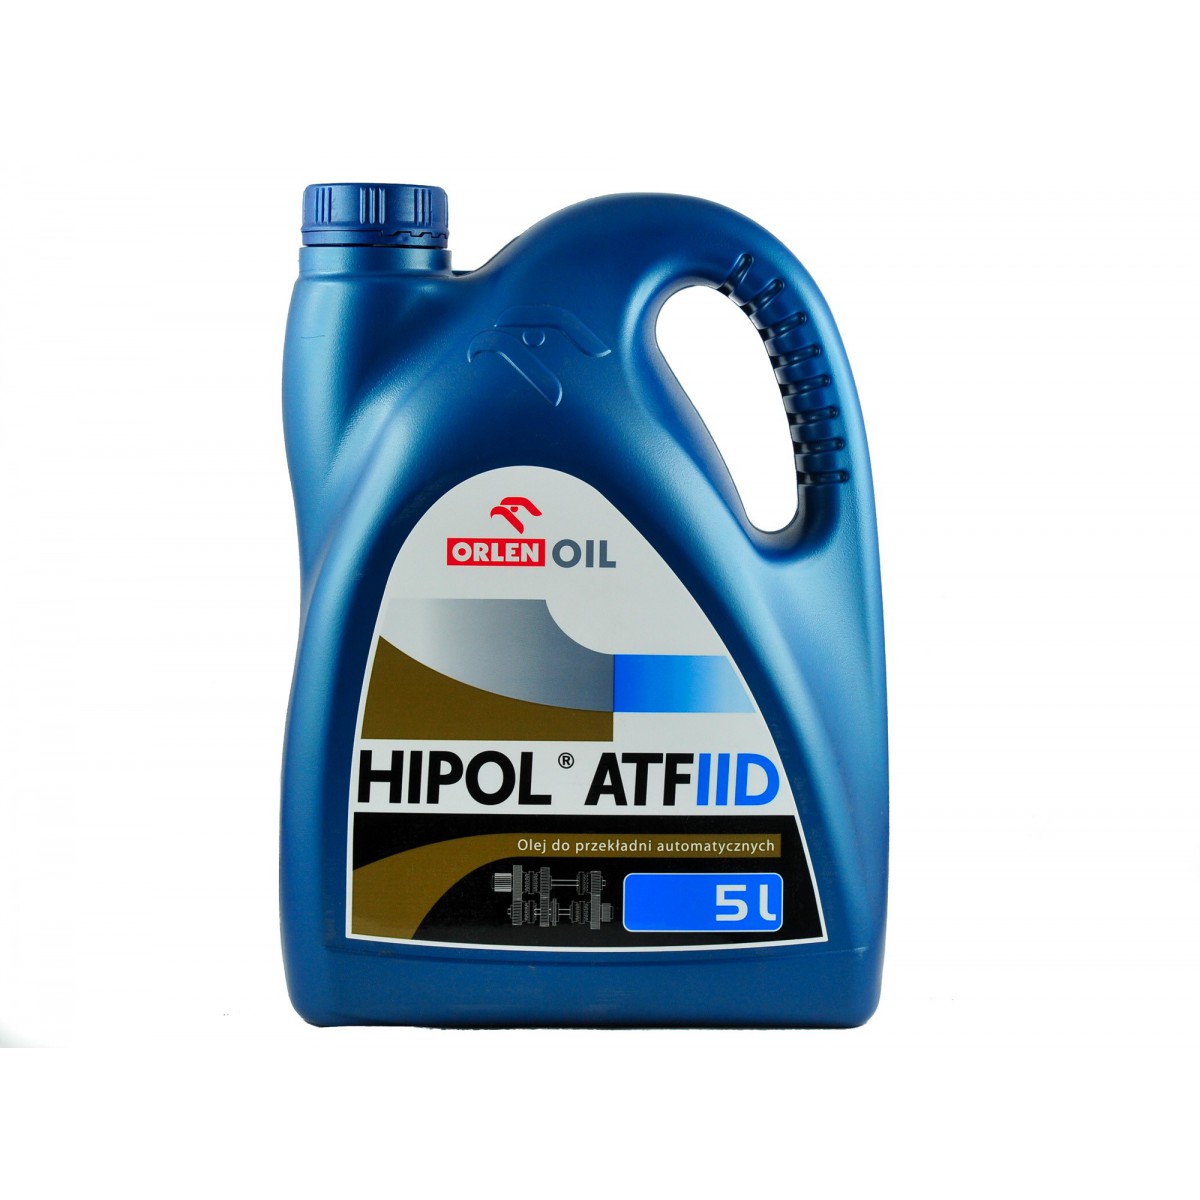 Hydraulický převodový olej HIPOL ATF II D pro automatické převodovky